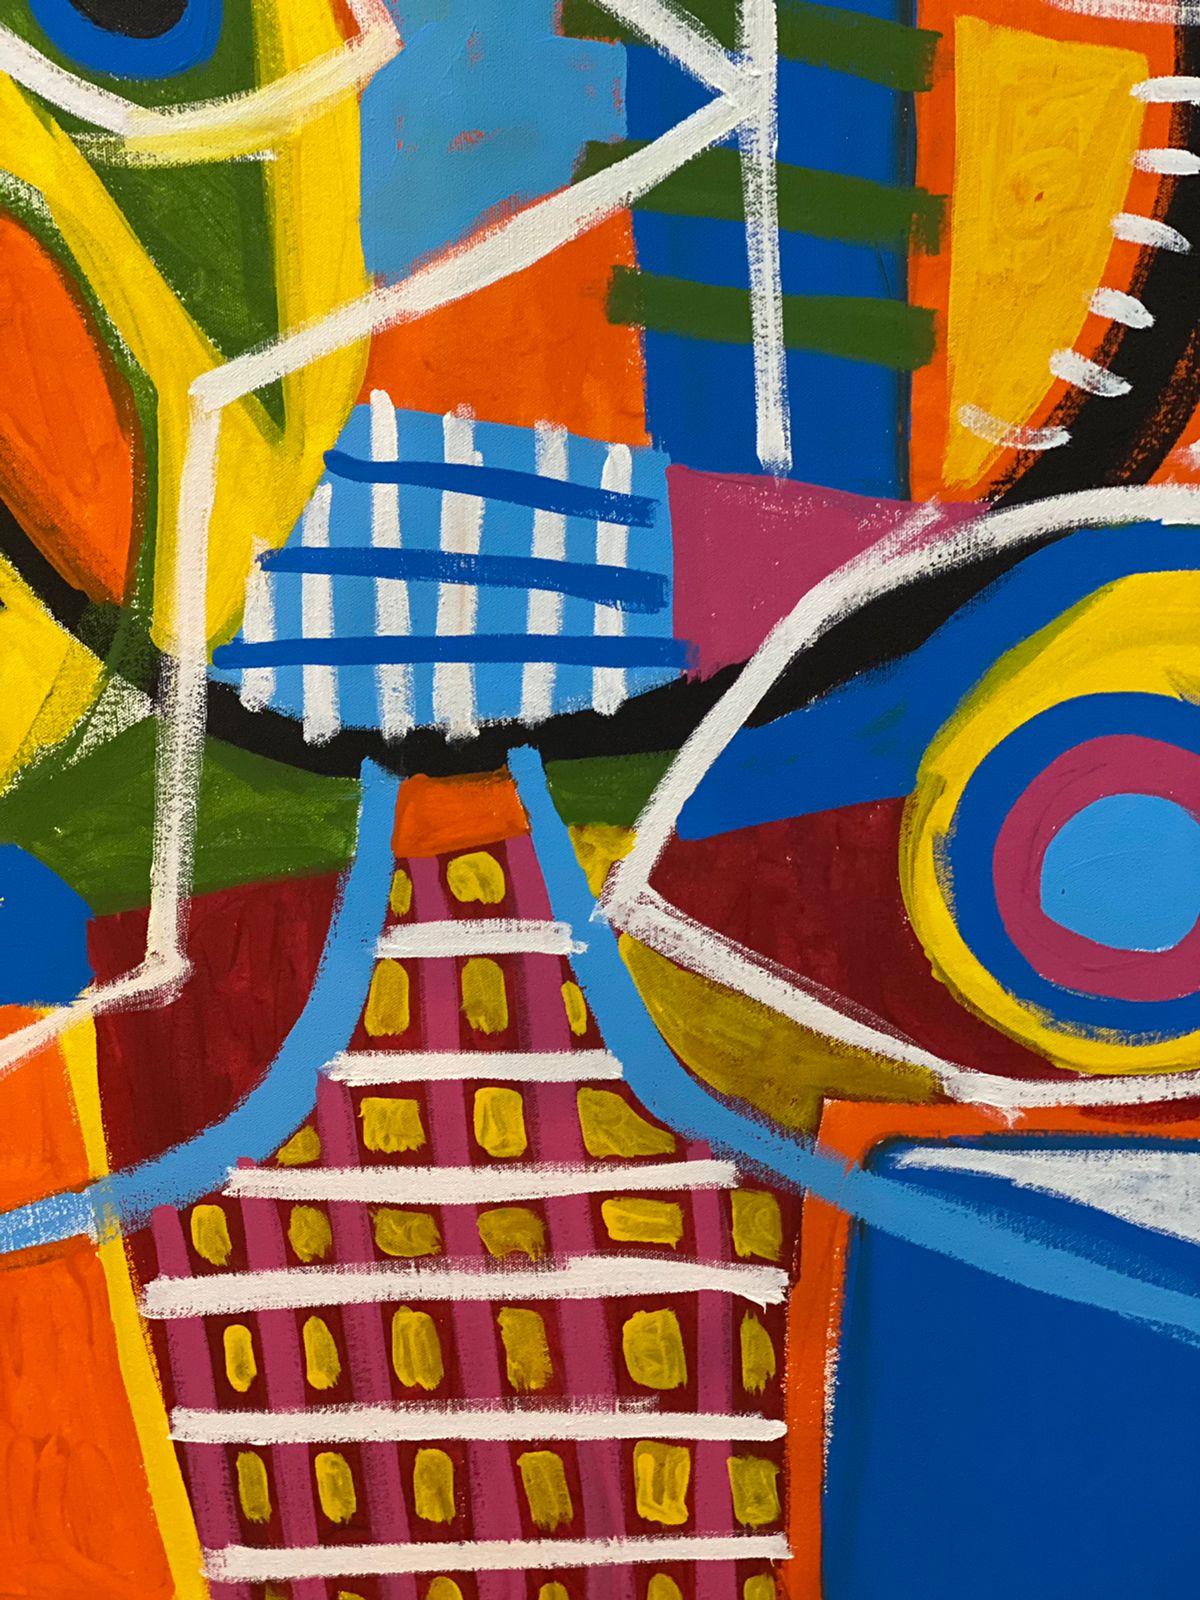 Art contemporain, peinture abstraite
Acrylique sur toile
140x180cm
Signé 



A propos de l'artiste
Enrique Pichardo (Mexico, 1973) est diplômé de l'Escuela Nacional de Pintura, Escultura y Grabado (ENPEG) 